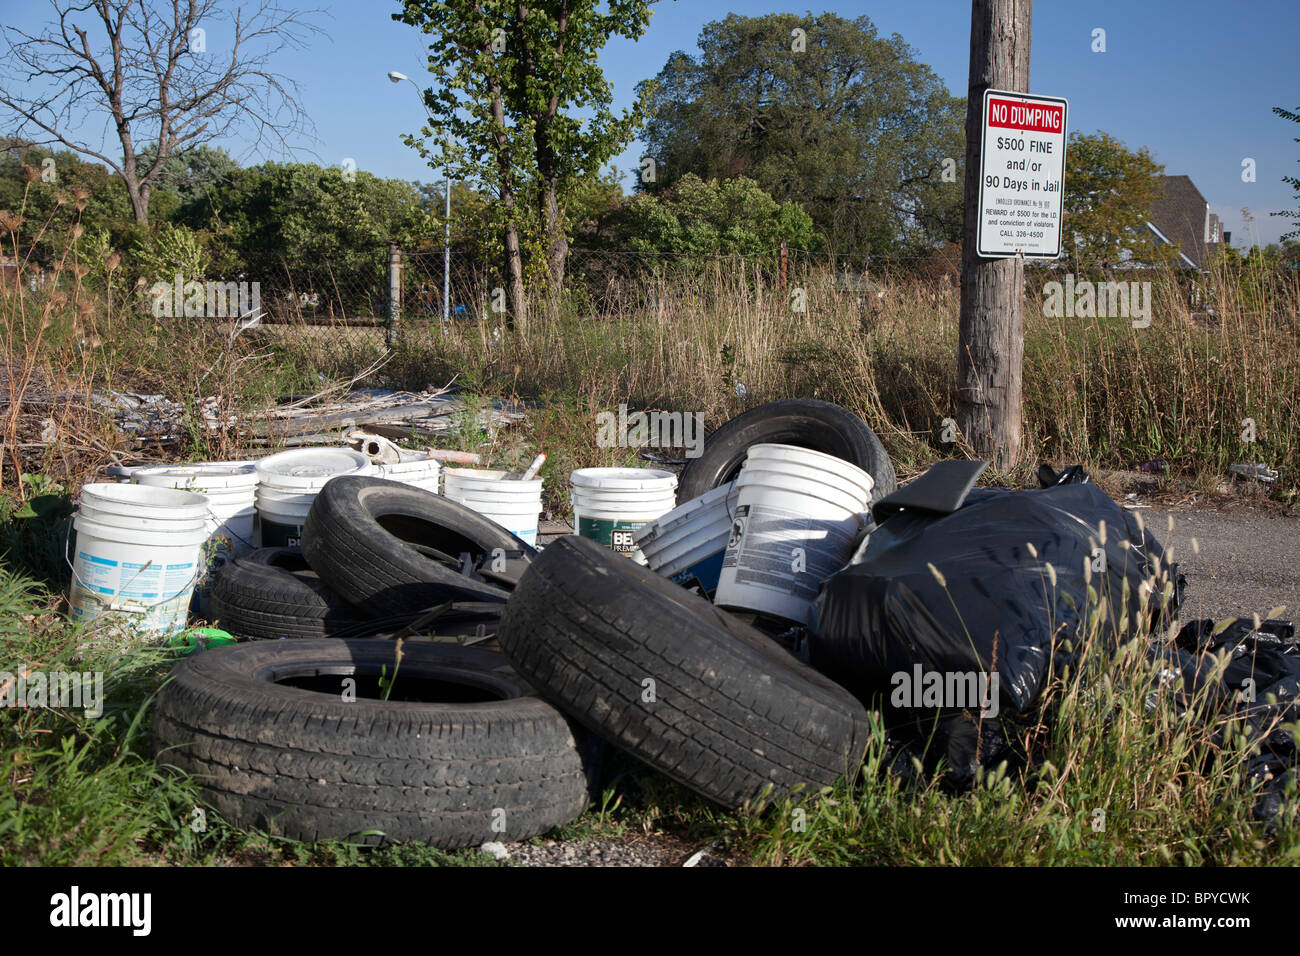 Detroit, Michigan - les vieux pneus et autres déchets sont déversés dans une ruelle à côté d'un signe d'avertissement des pénalités pour dépôt illégal. Banque D'Images